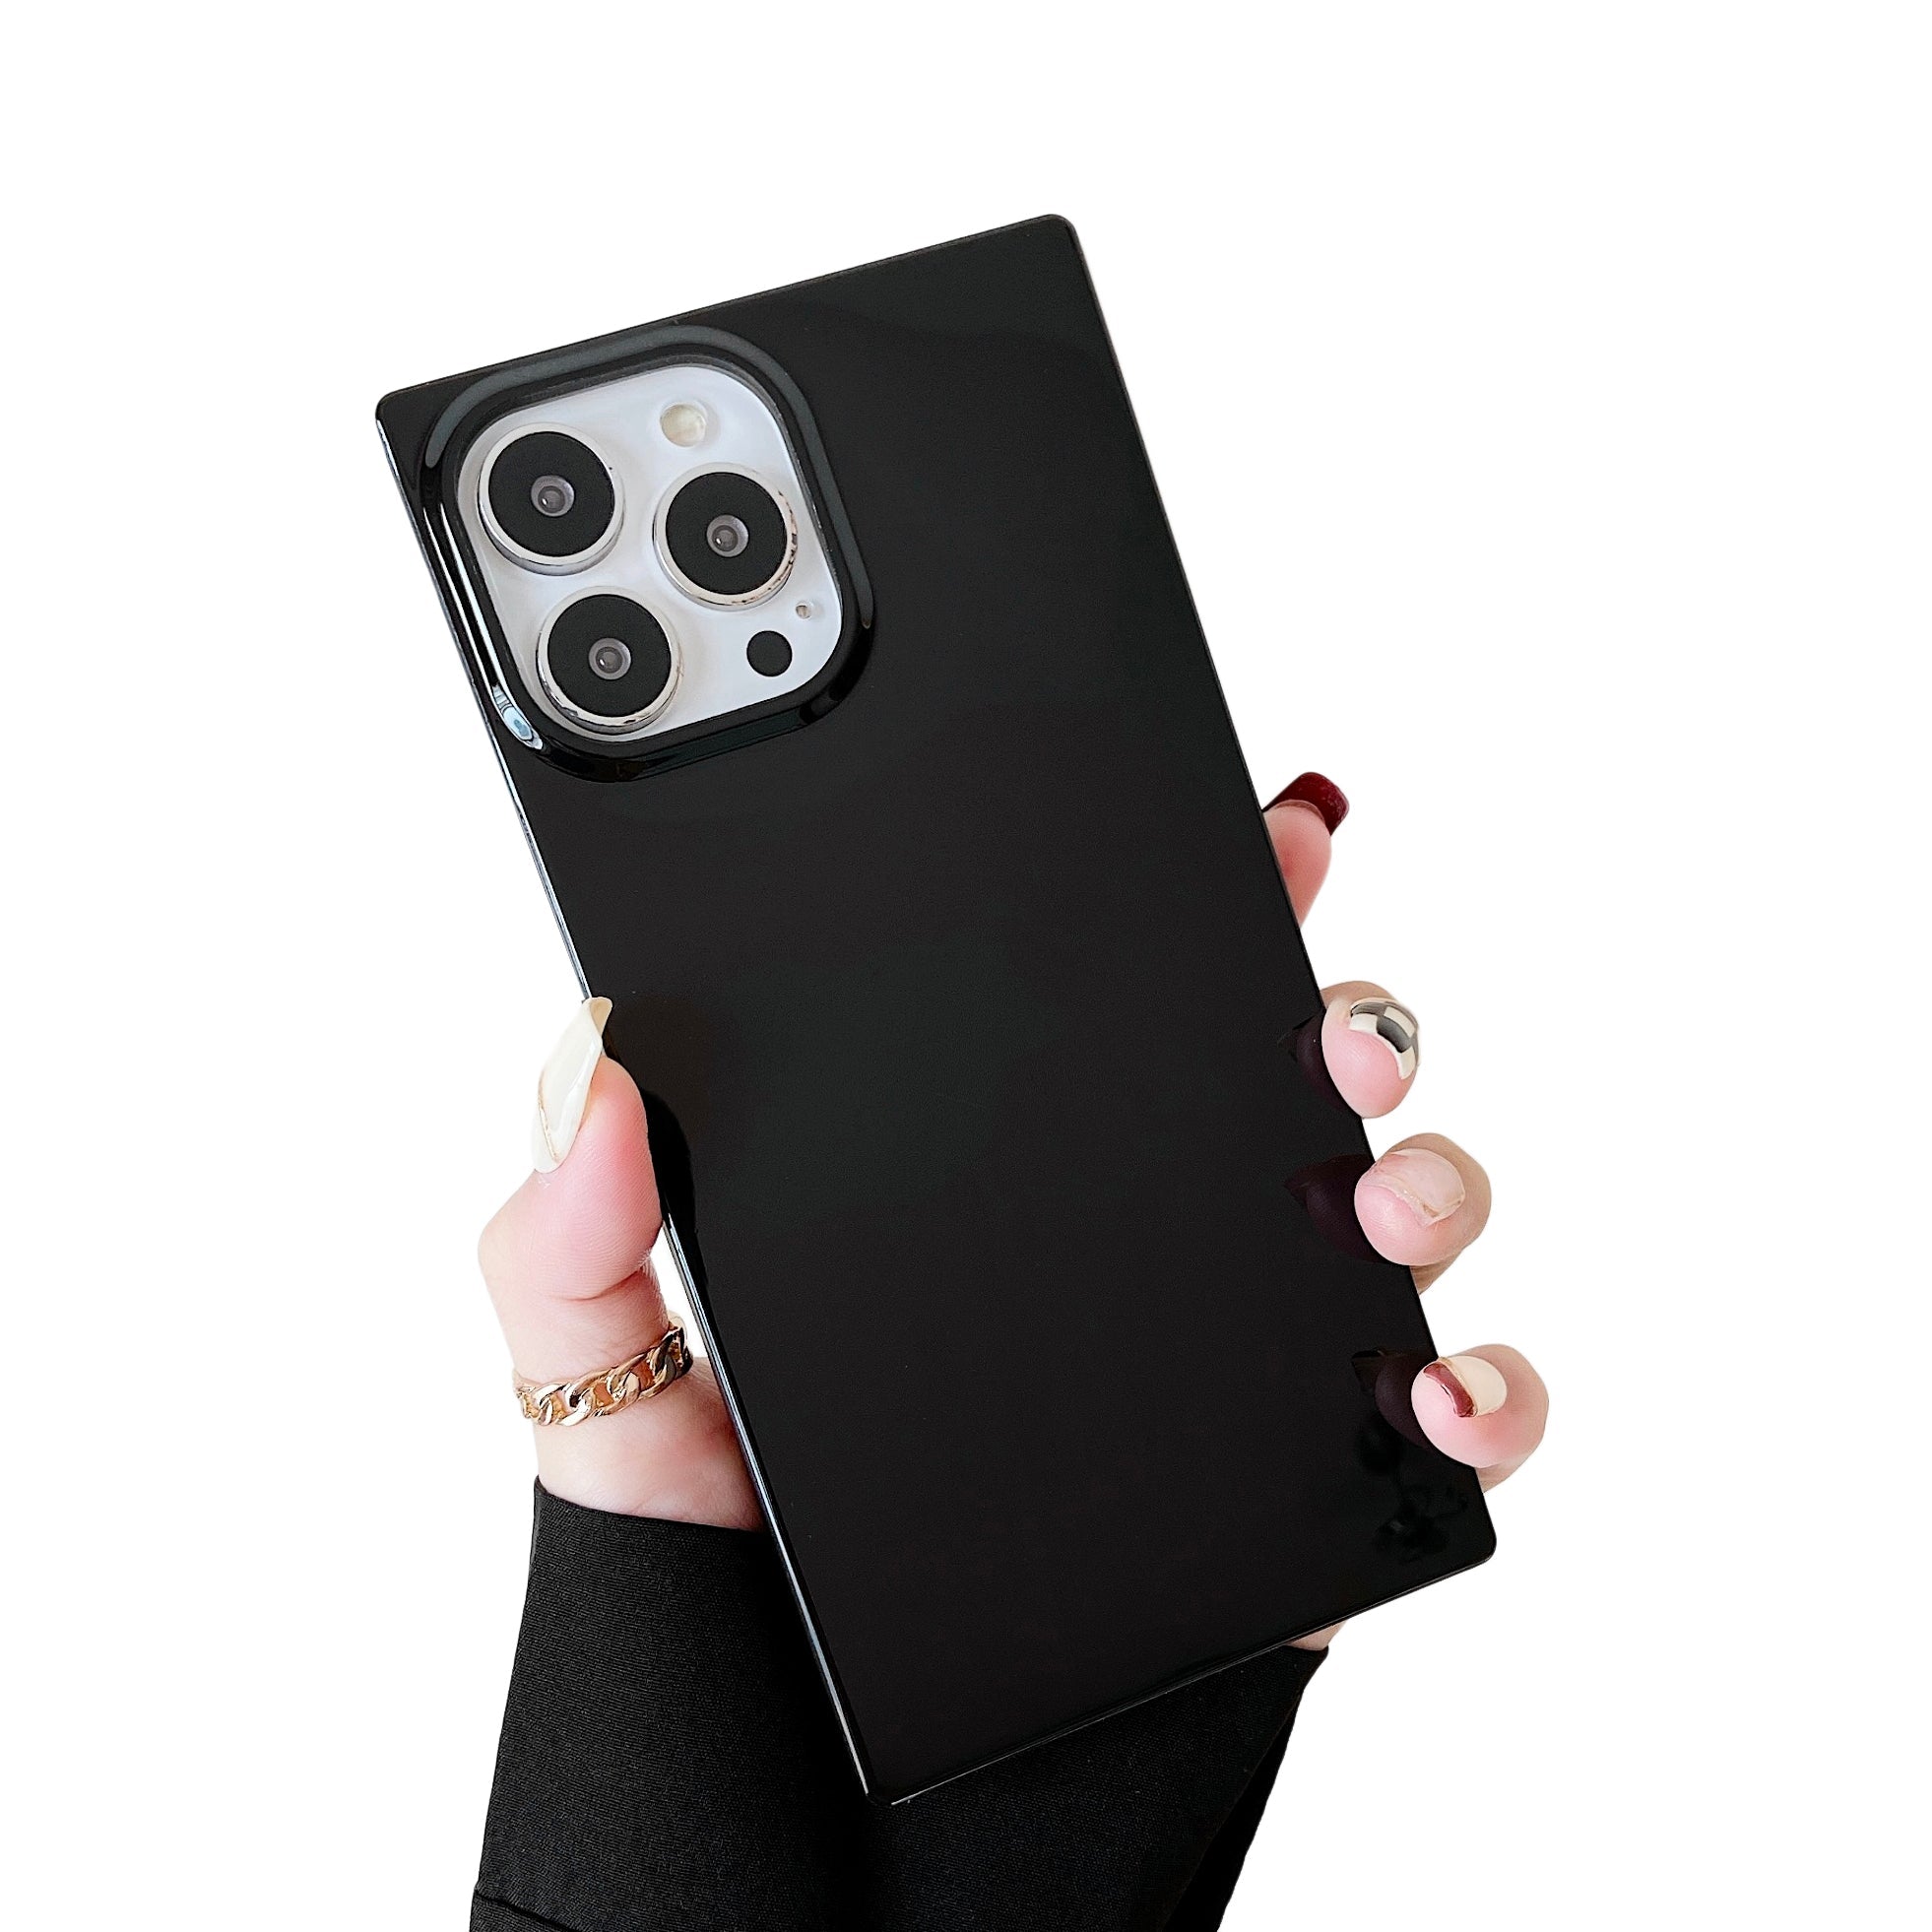 iPhone 11 Pro Max Case Square Neutral Plain Color (Black)